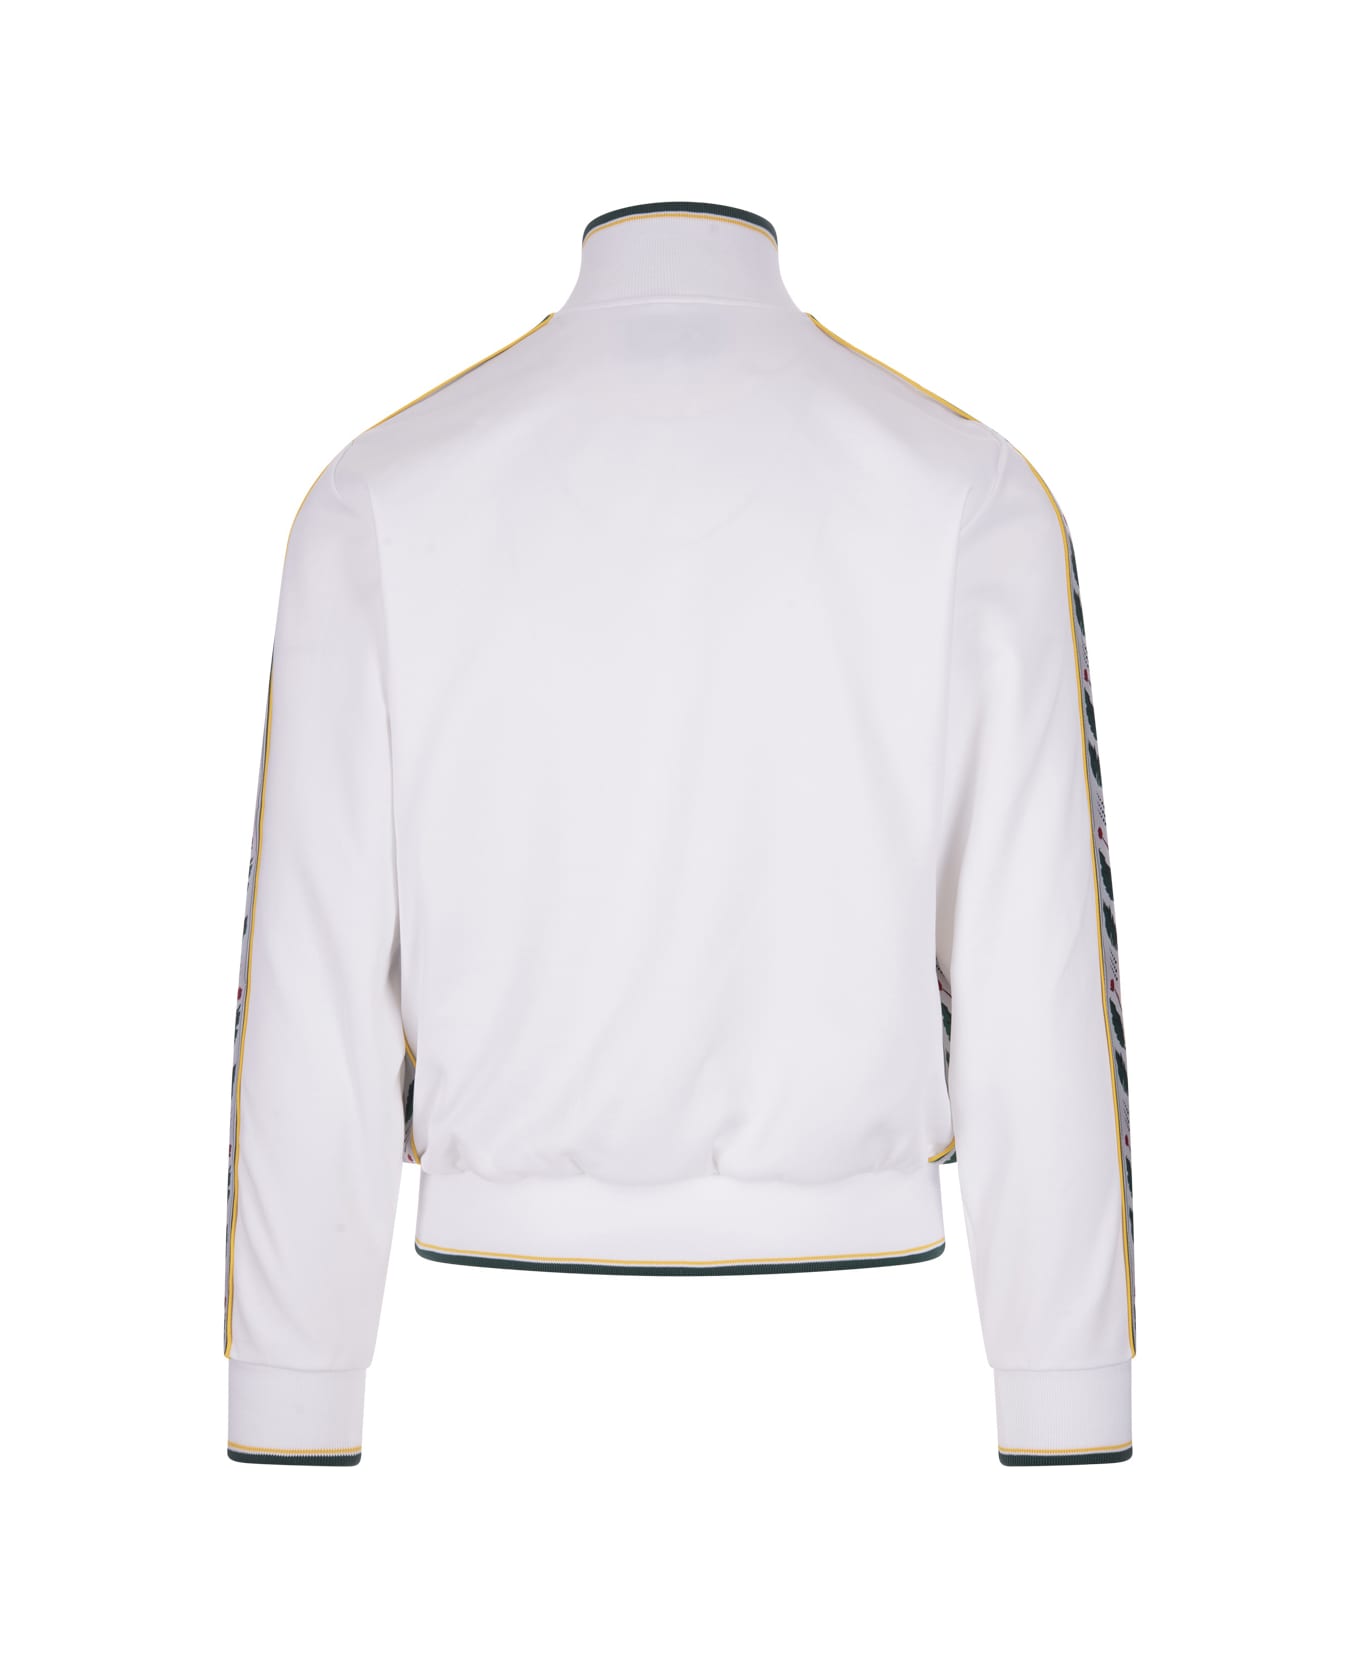 Casablanca White Zip-up Sweatshirt With Laurel Graphic - White